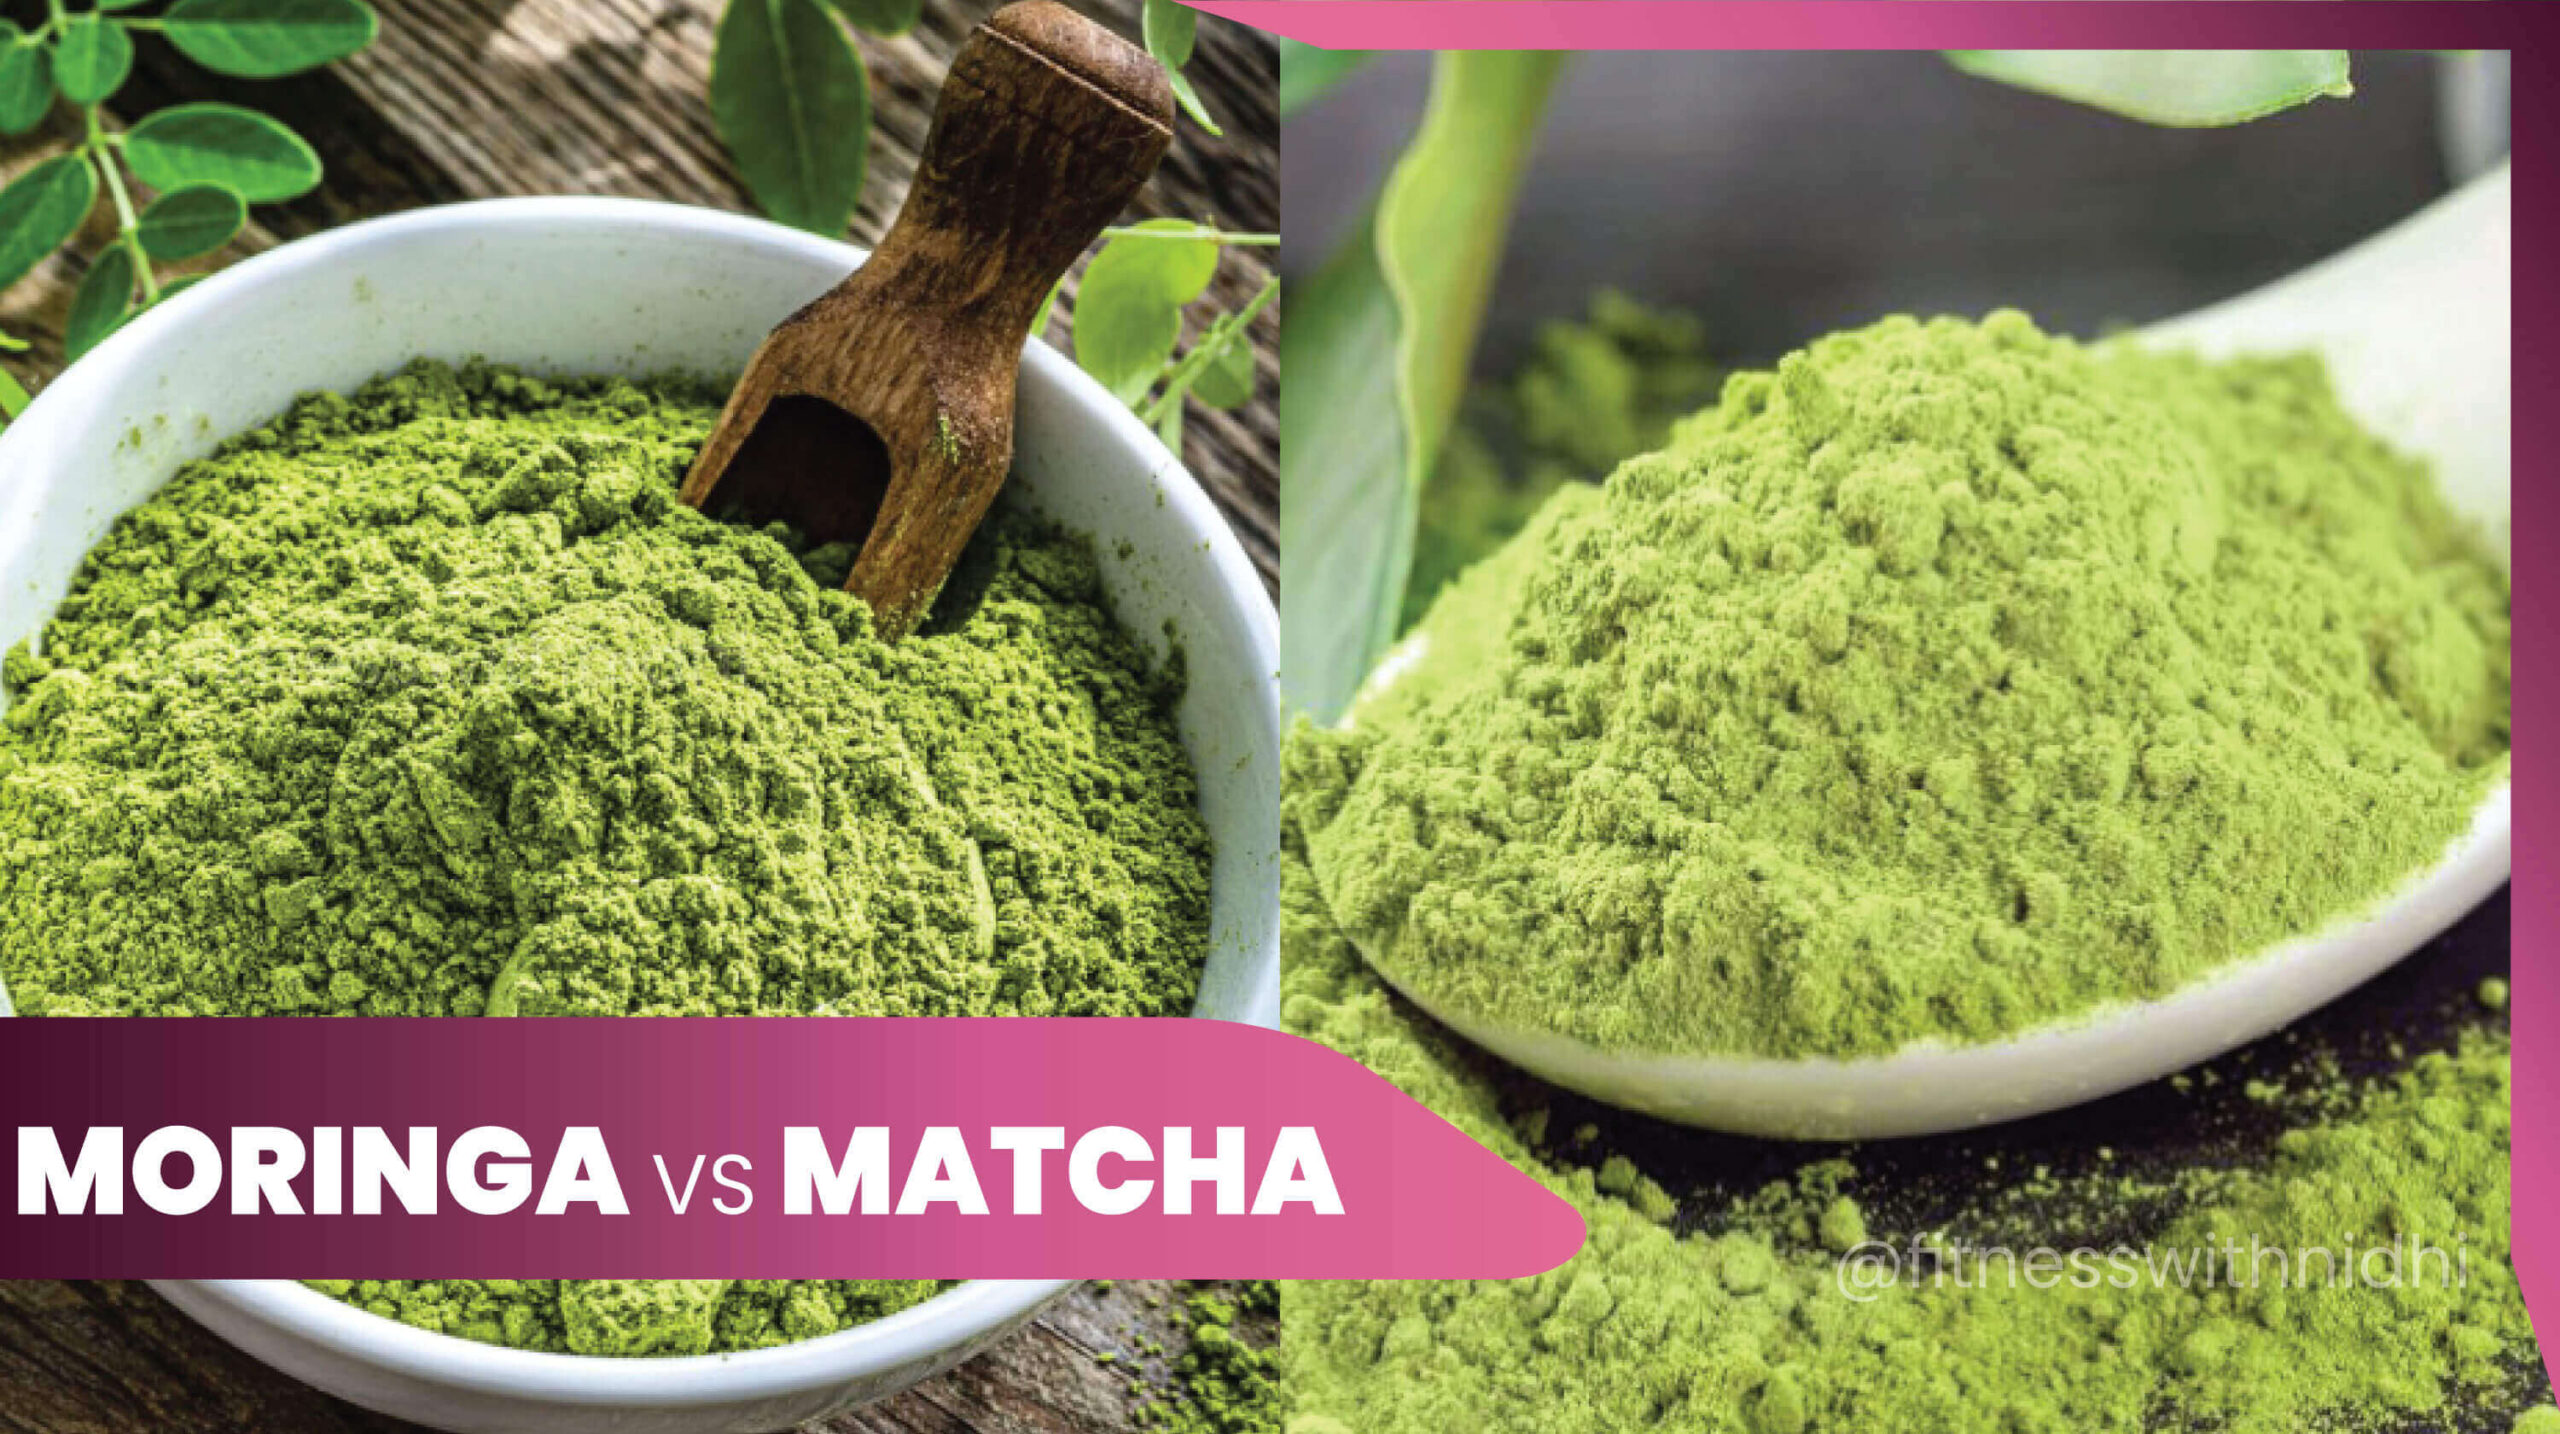 11moringa vs matcha nutritional difference